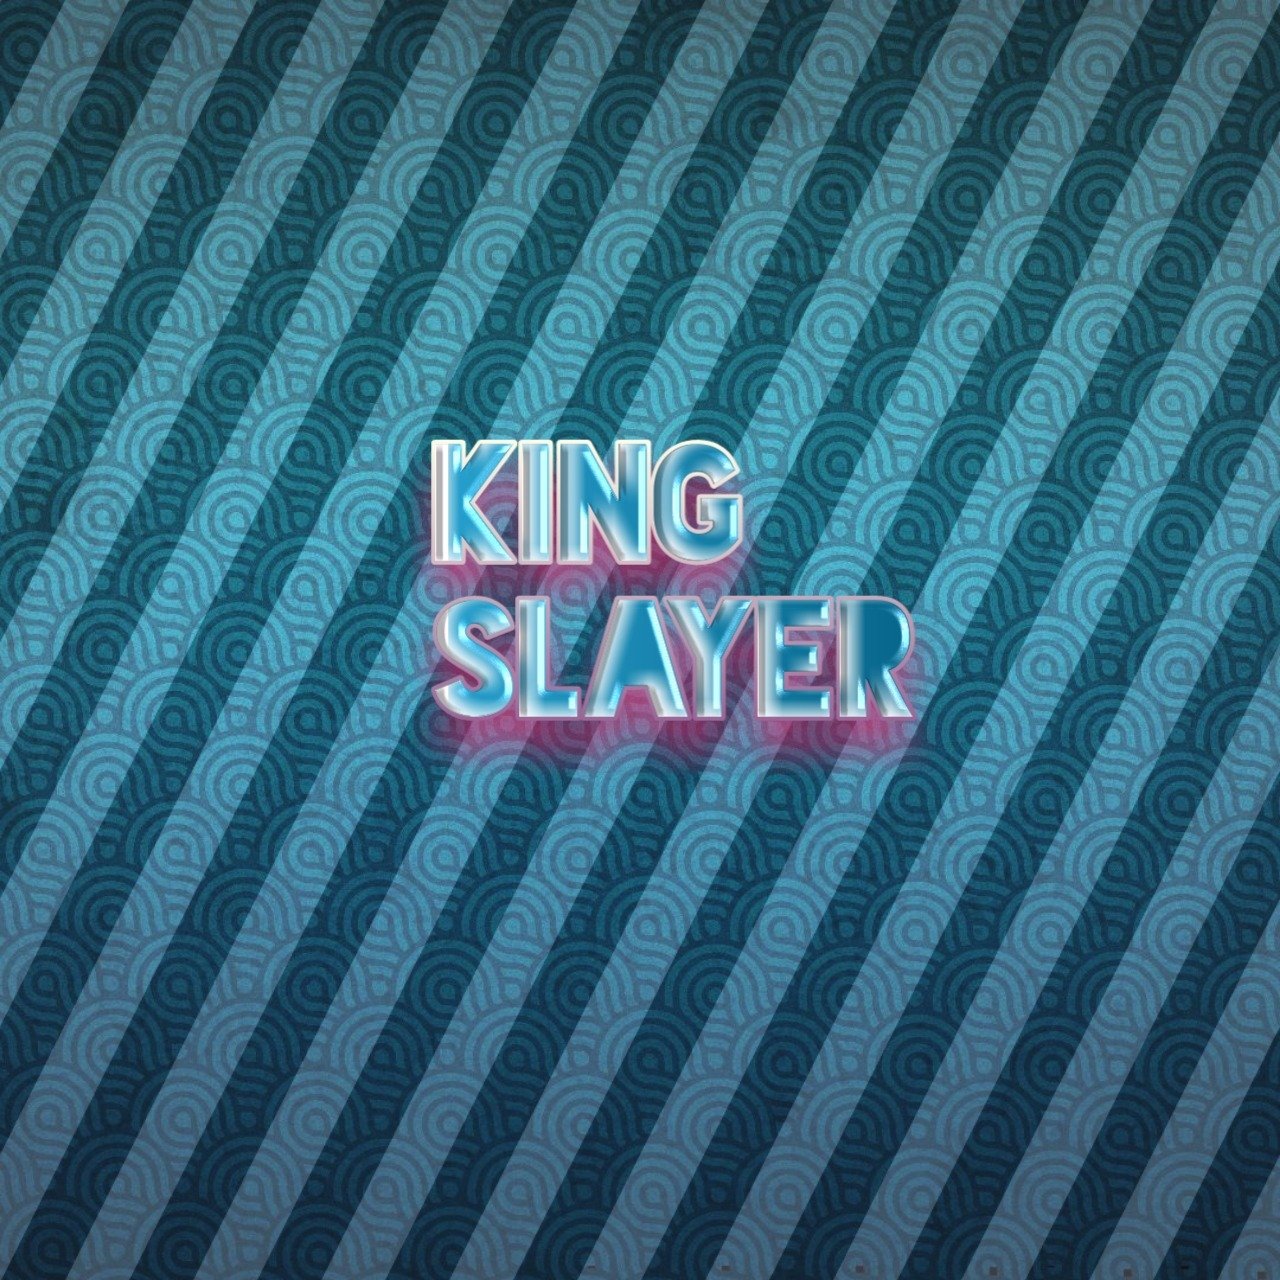 King Slayer Kingsla18584676 Twitter